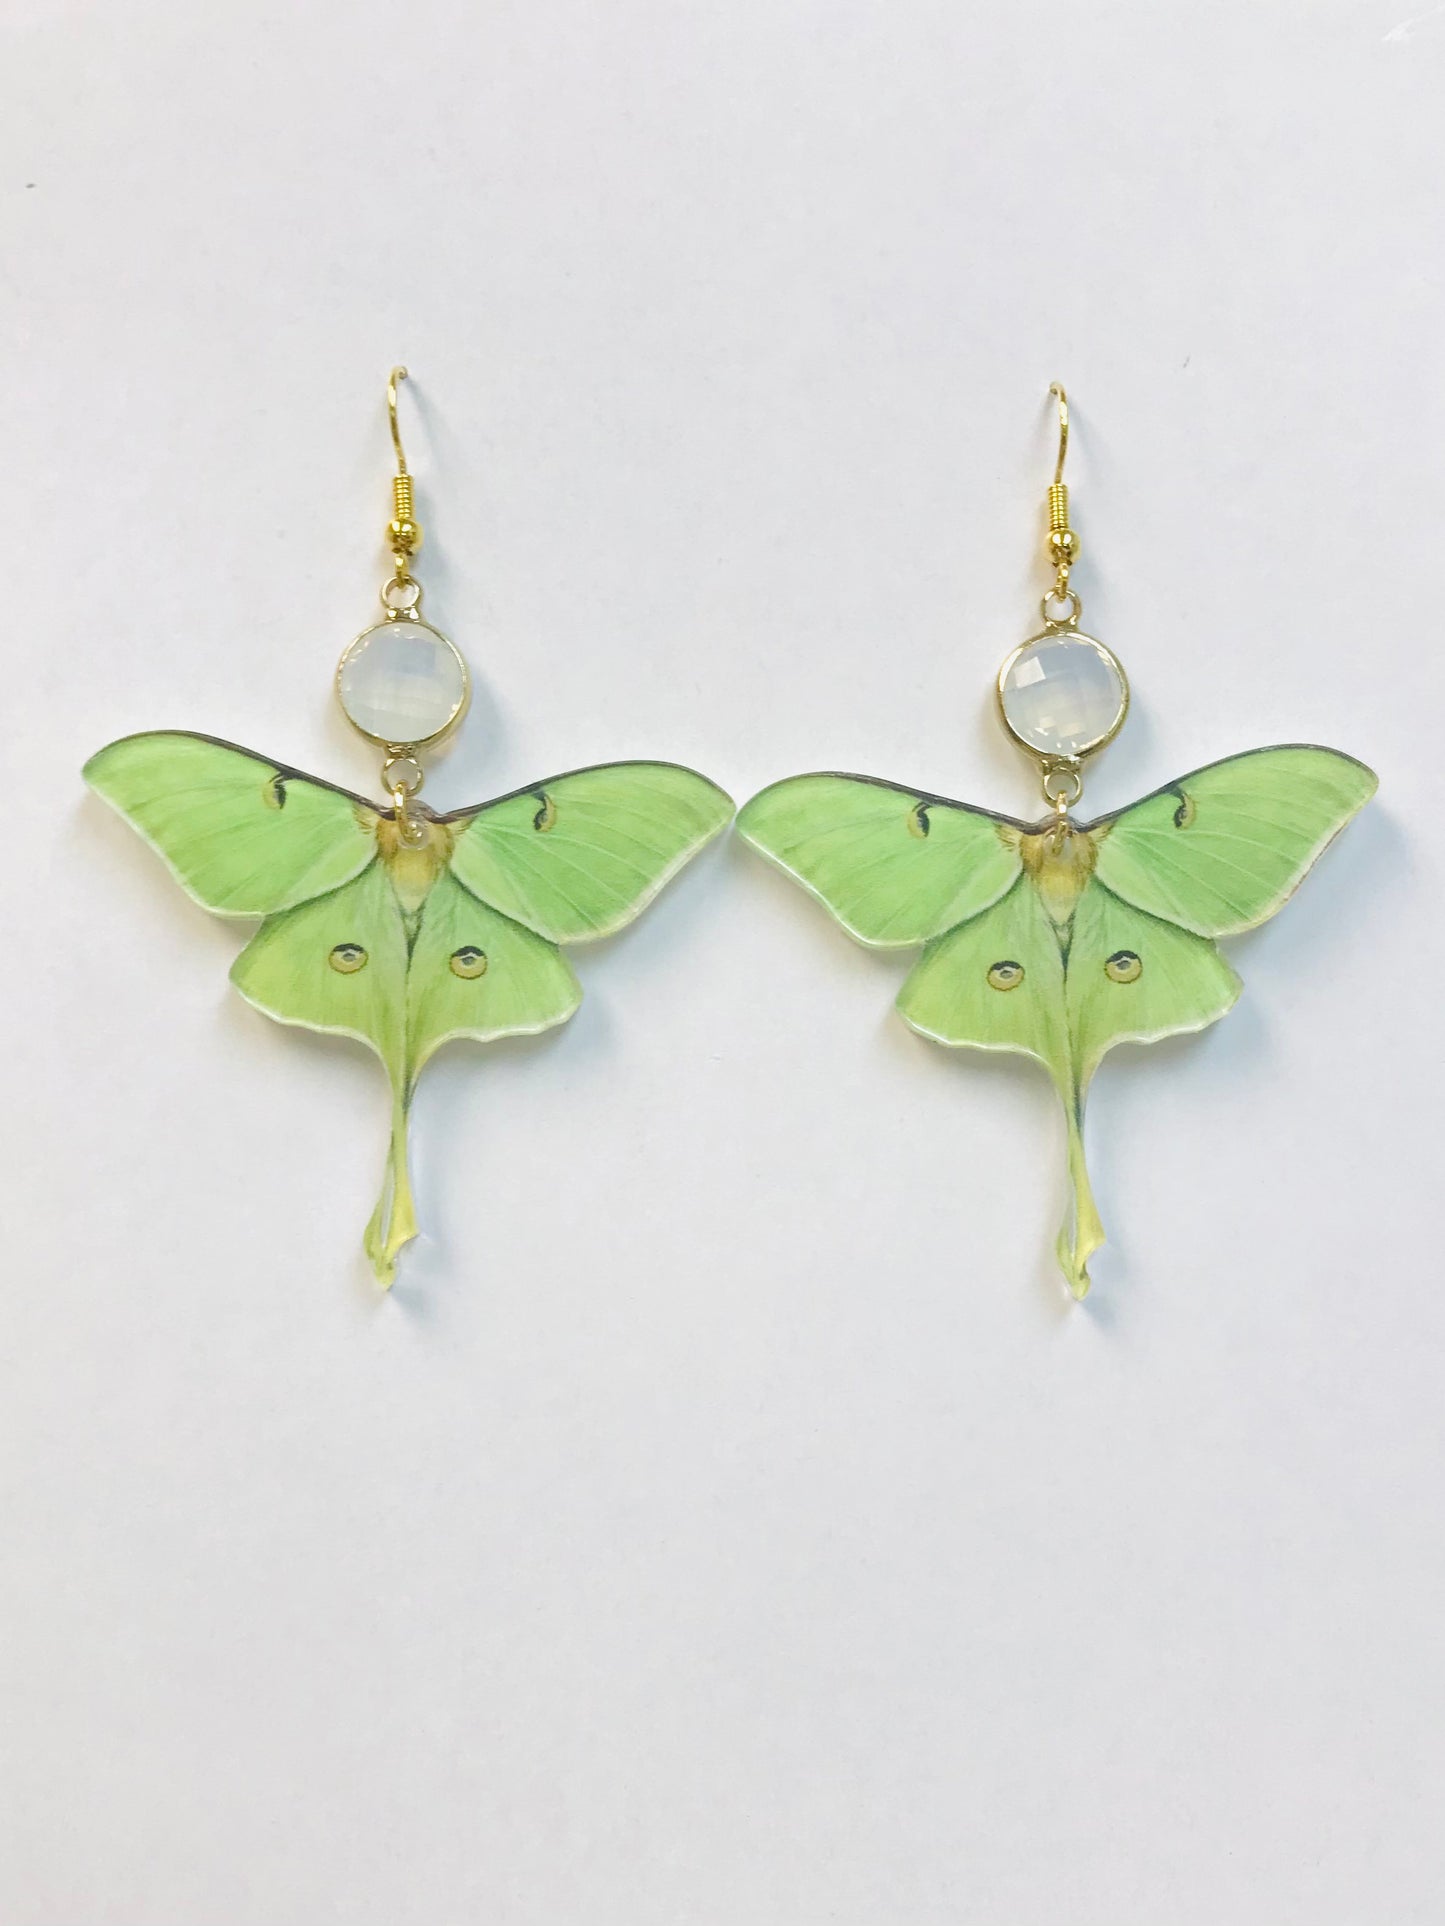 2 Acrylic Green Moth Earrings, New Beginning Earrings